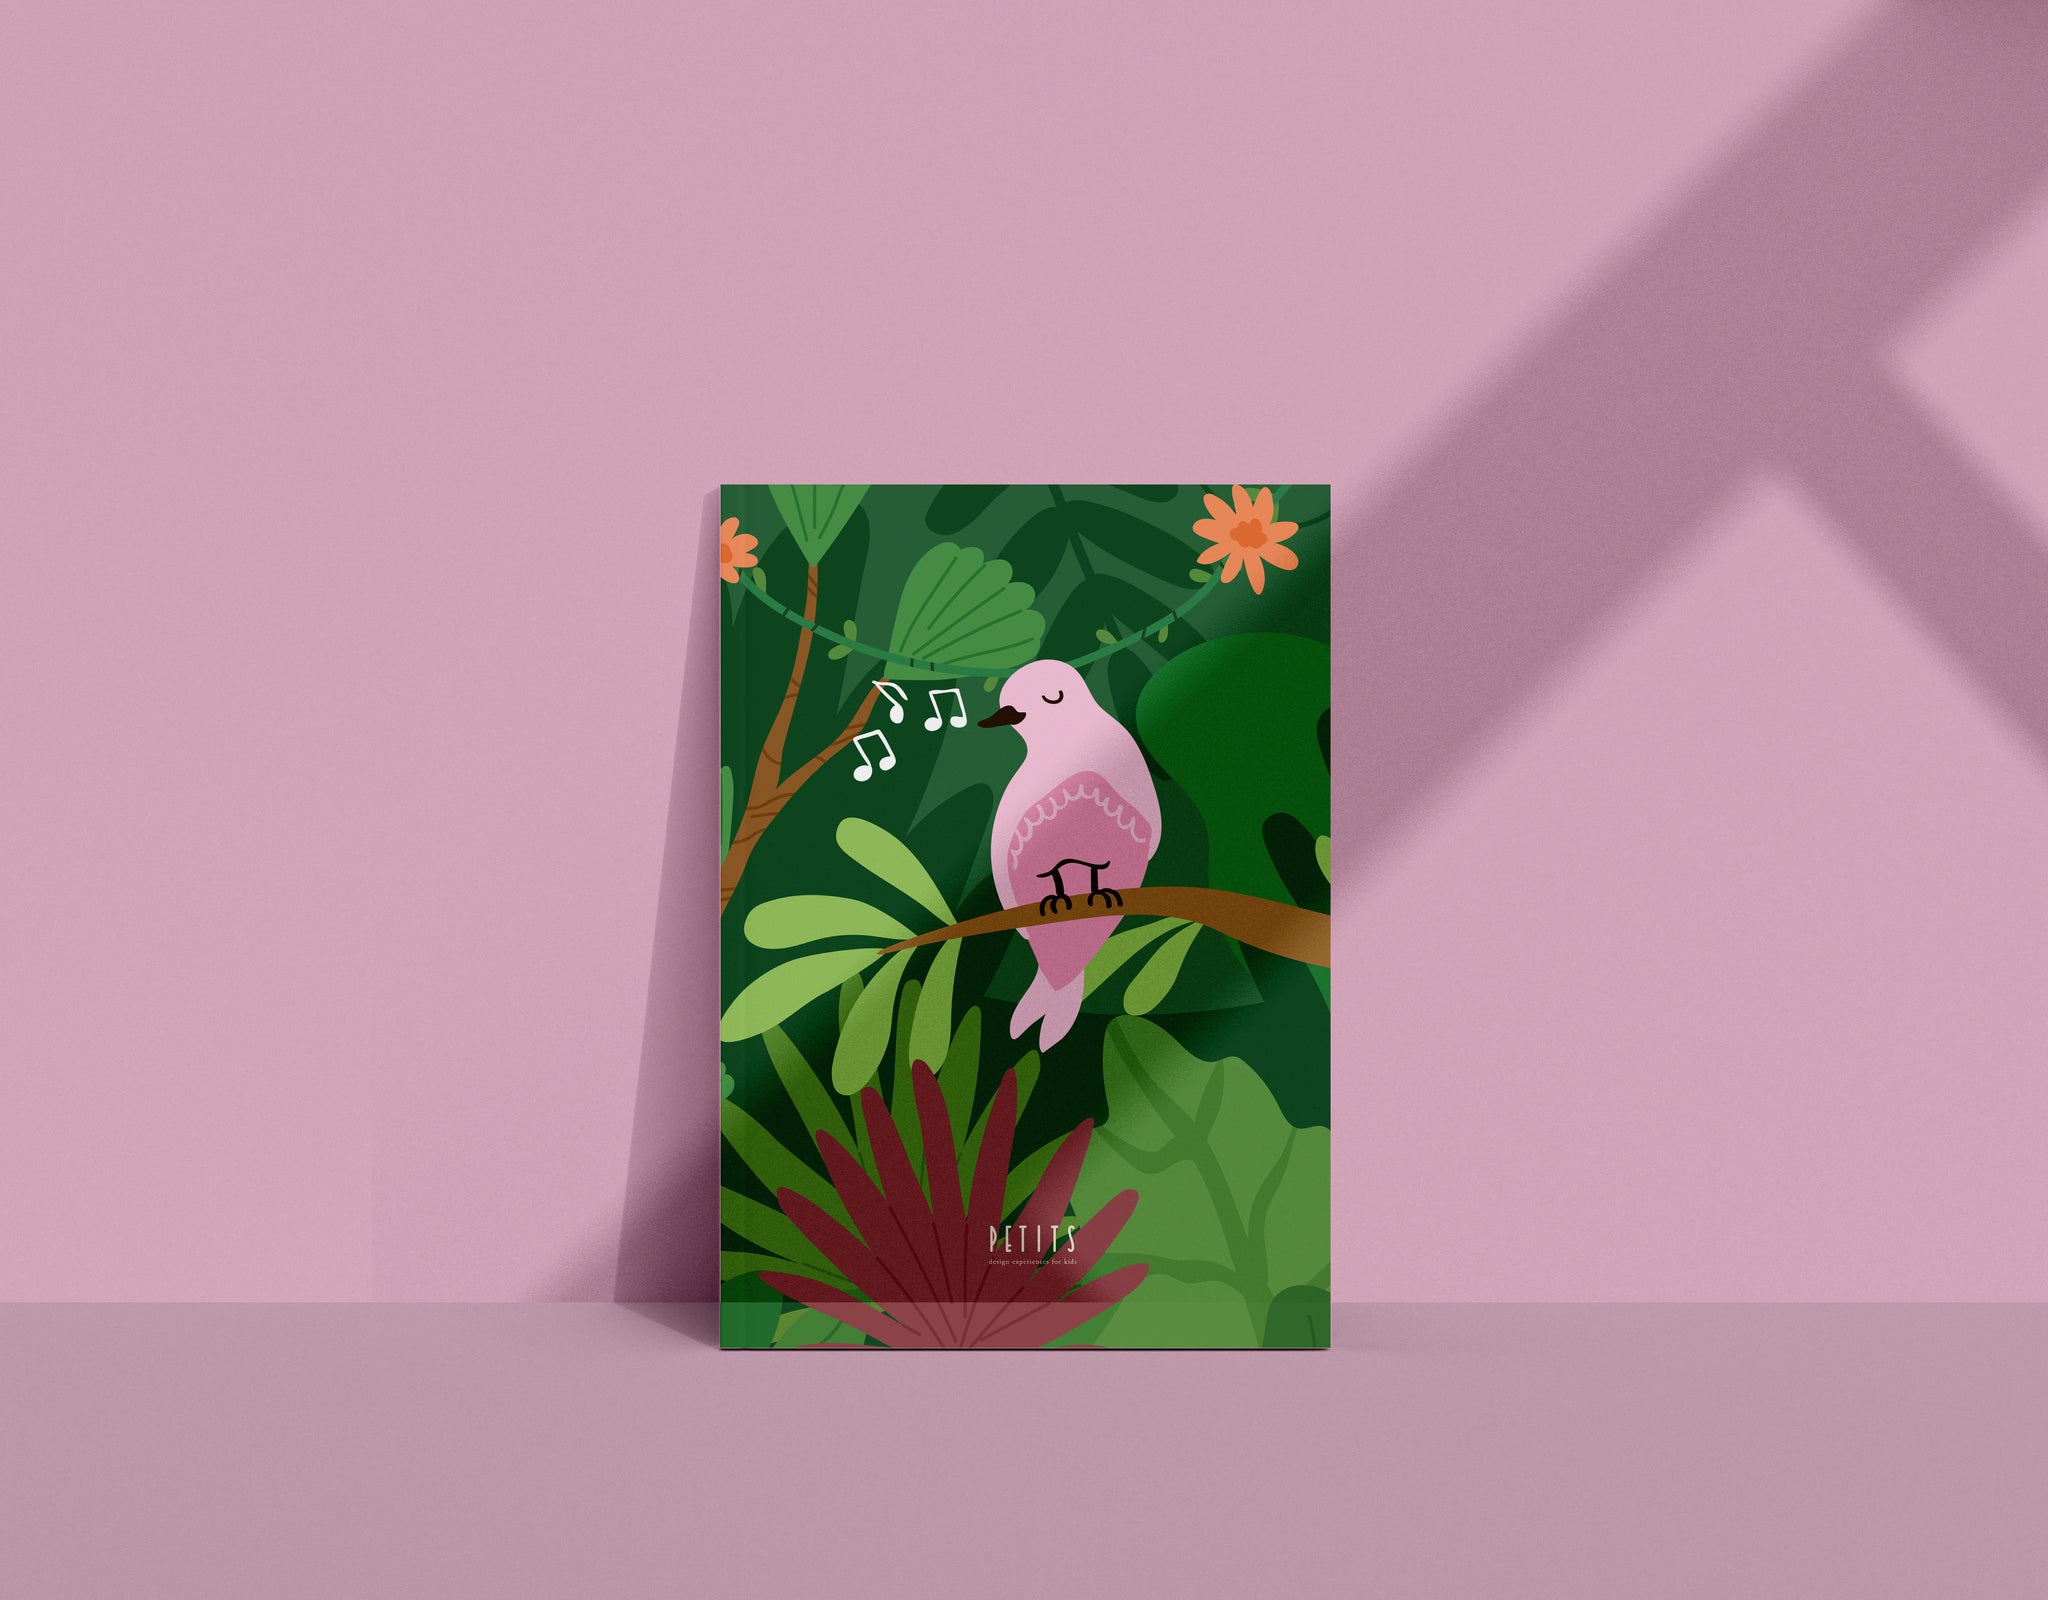 Ροζ παπαγαλάκι | Pink parrot